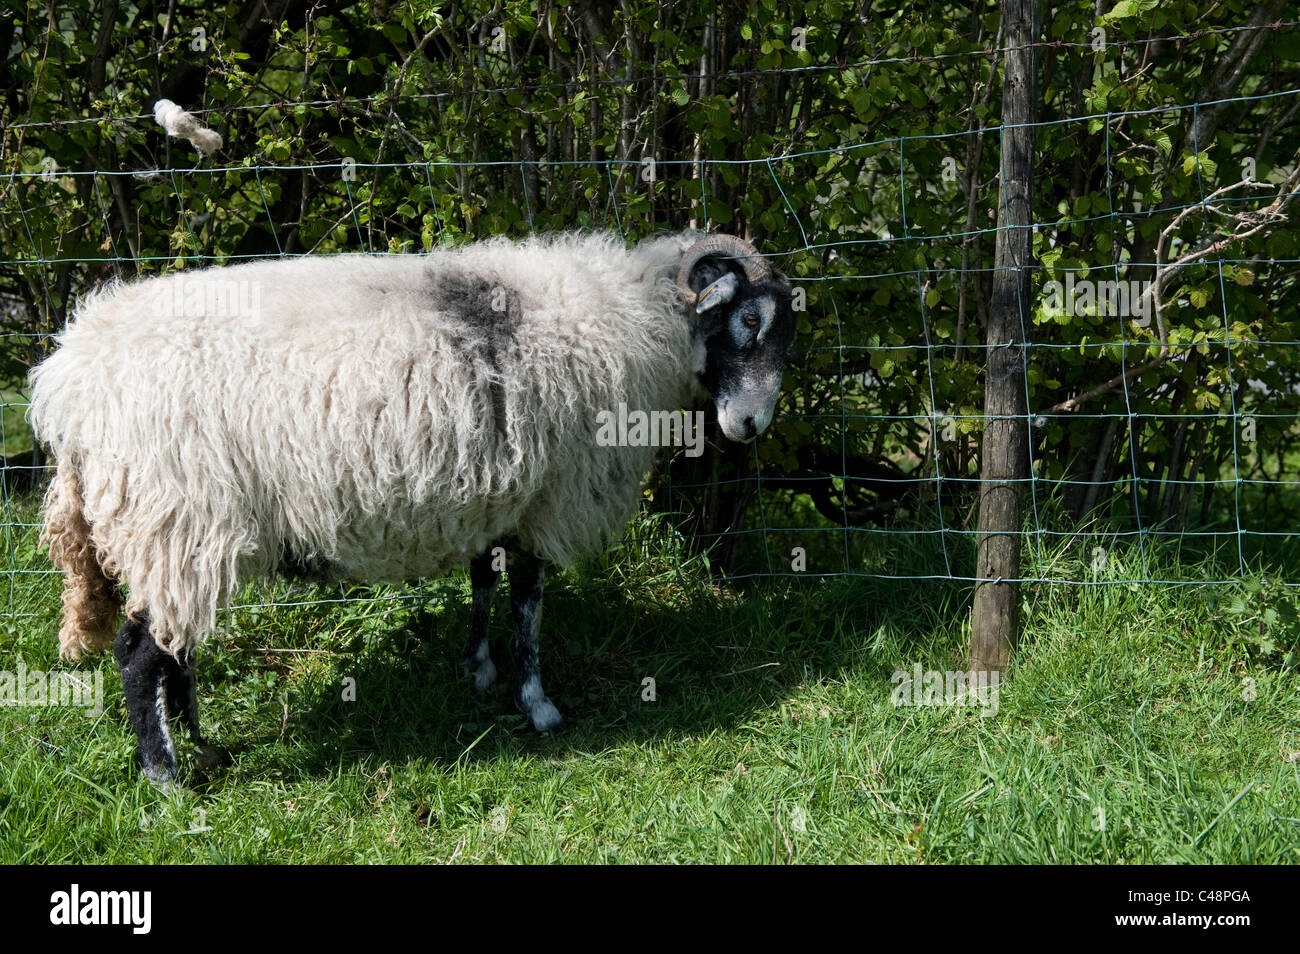 Gehörnte Schafe verfangen in Maschendraht Zaun. Stockfoto